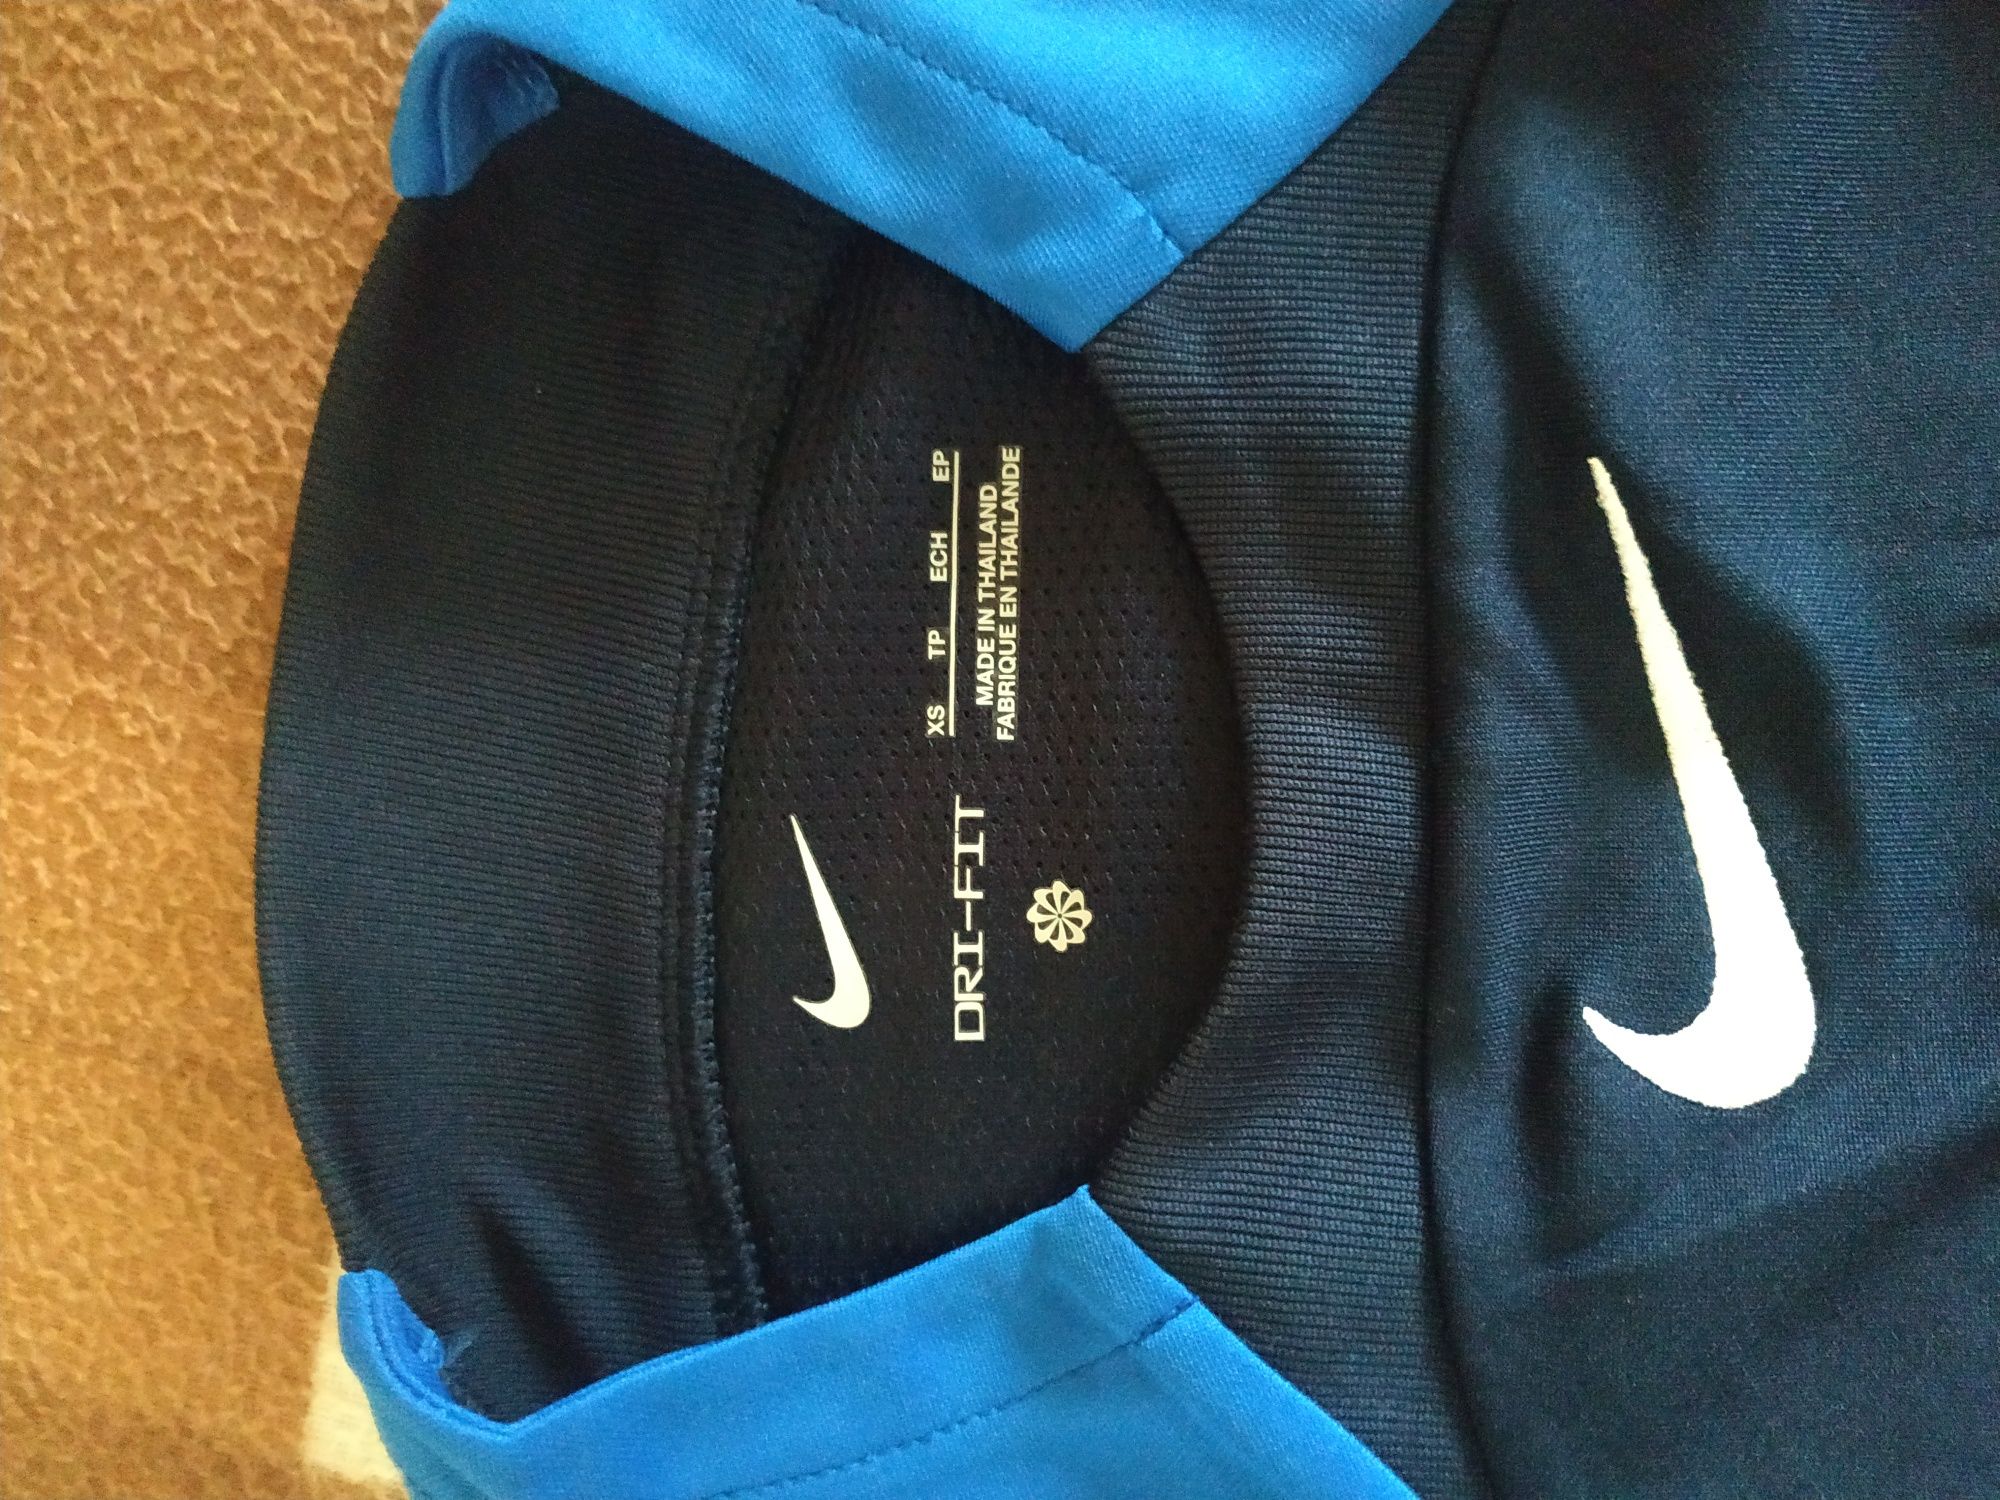 Футболка фирмы Nike.Цвет сине-голубой.